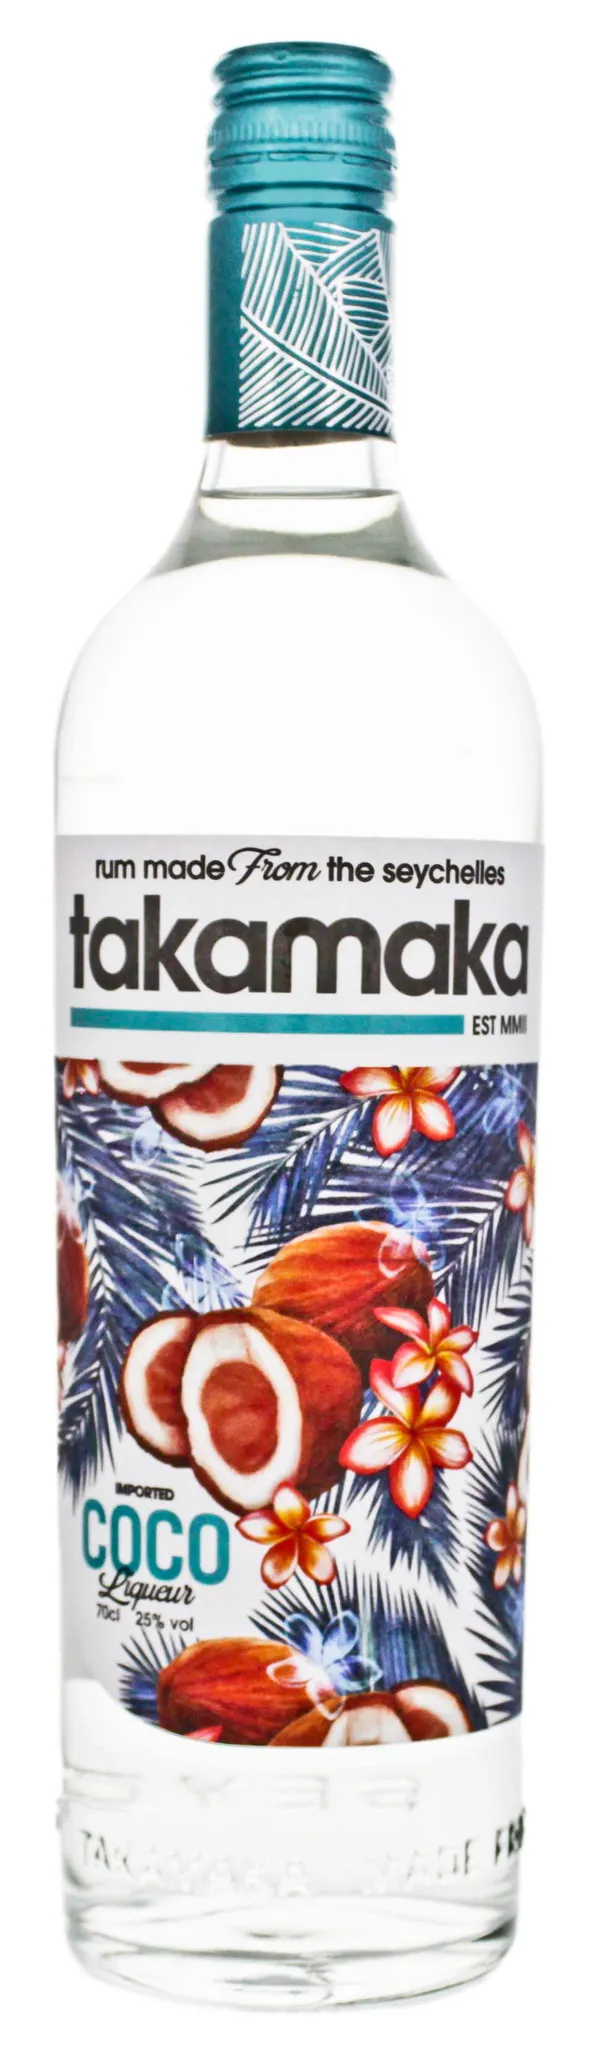 25 Likör Takamaka Vol.-%, 0,7l, alc. Cocos